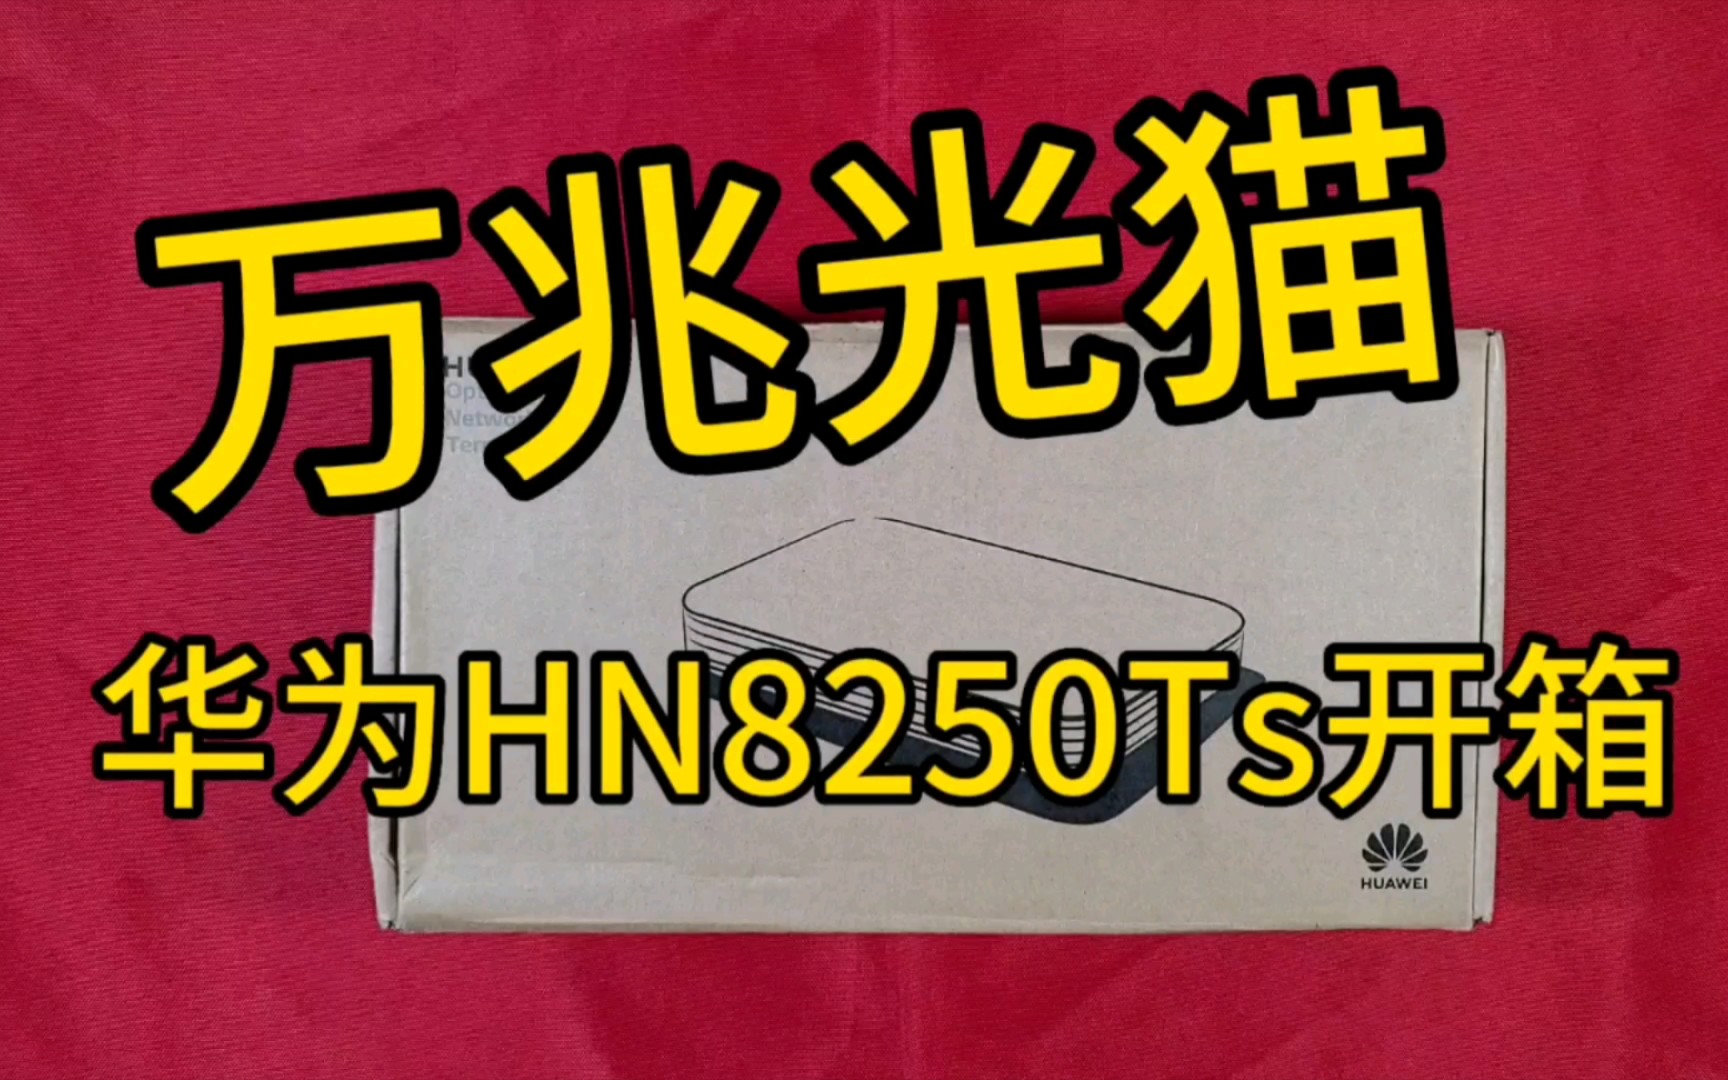 华为HN8250Ts开箱视频